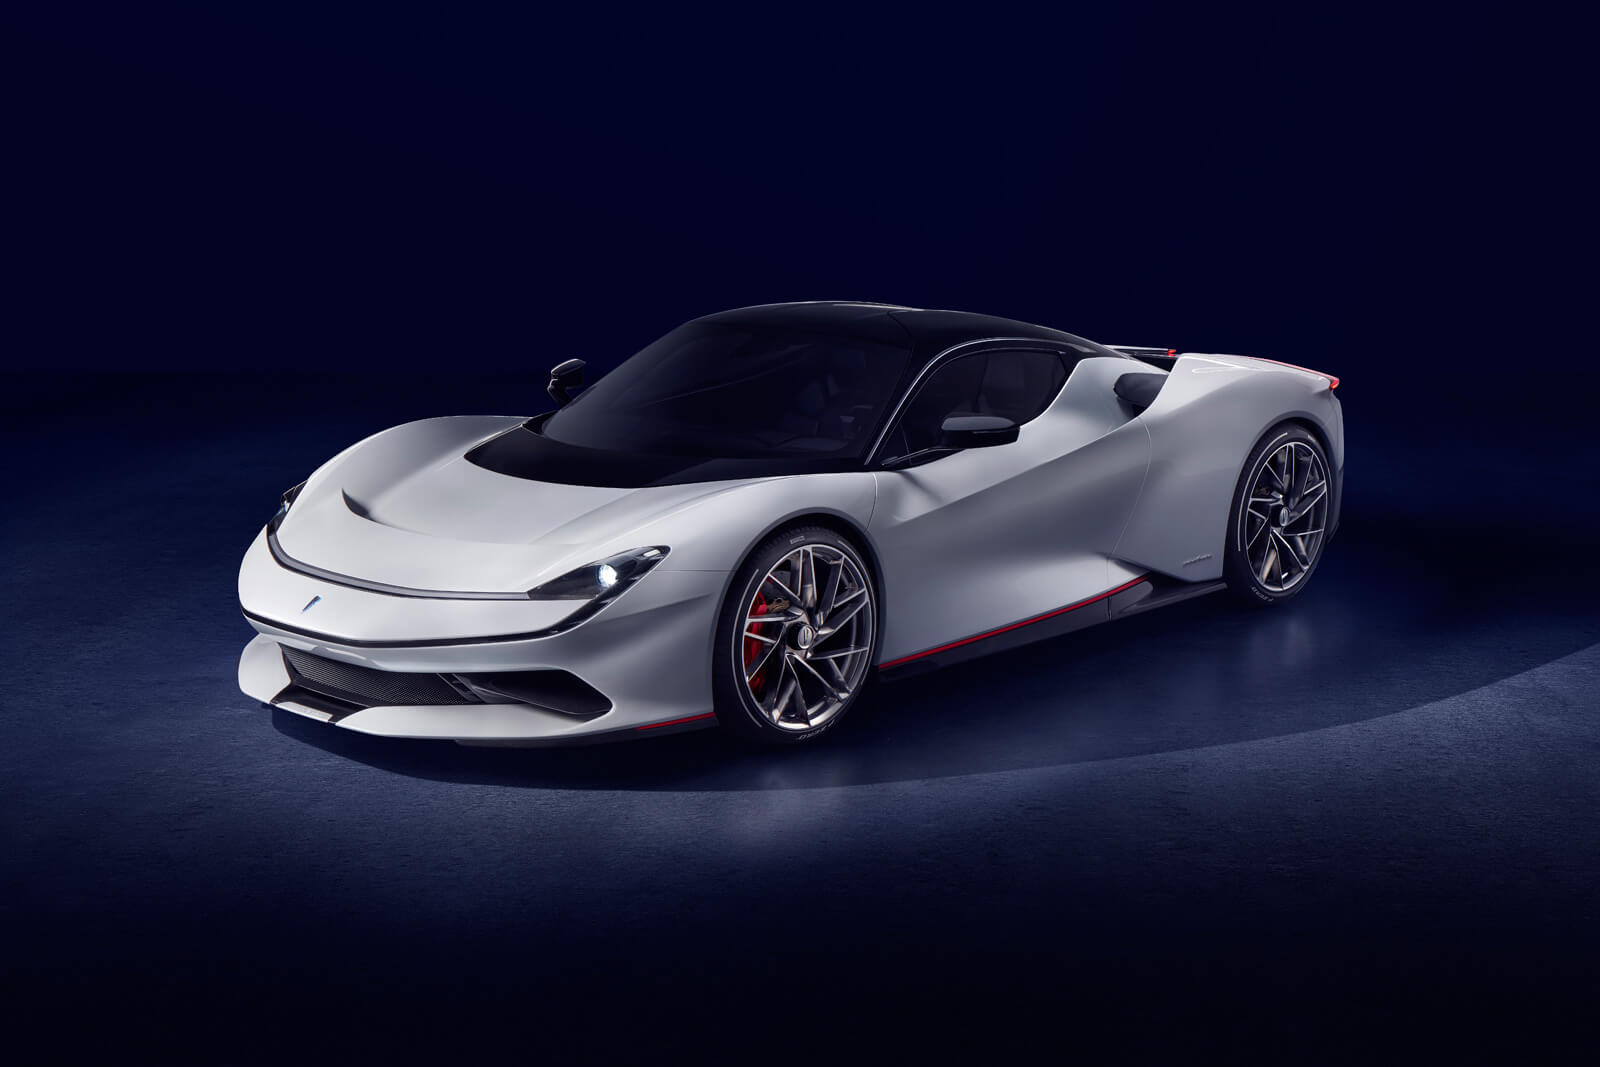 U kolovozu predstavljeni Pininfarinin prvi automobil, nastao u suradnji s Rimcem, stiže u prodaju sljedeće godine. Battista, kako se službeno zove, dijeli neke elemente s Rimčevim modelom C_Two, poput pogonskog sustava. No, kako su rekli iz obje kompanije, radi se o dva različita automobila, koji imaju vlastite karaktere i podešenja. Također, zanimljivo je za istaknuti da je uz sve modele Ferrarija, Maseratija i Lamborghinija koji se proizvode u Italiji, Pininfarinin Battista najsnažniji cestovni automobil ikada proizveden u Italiji.